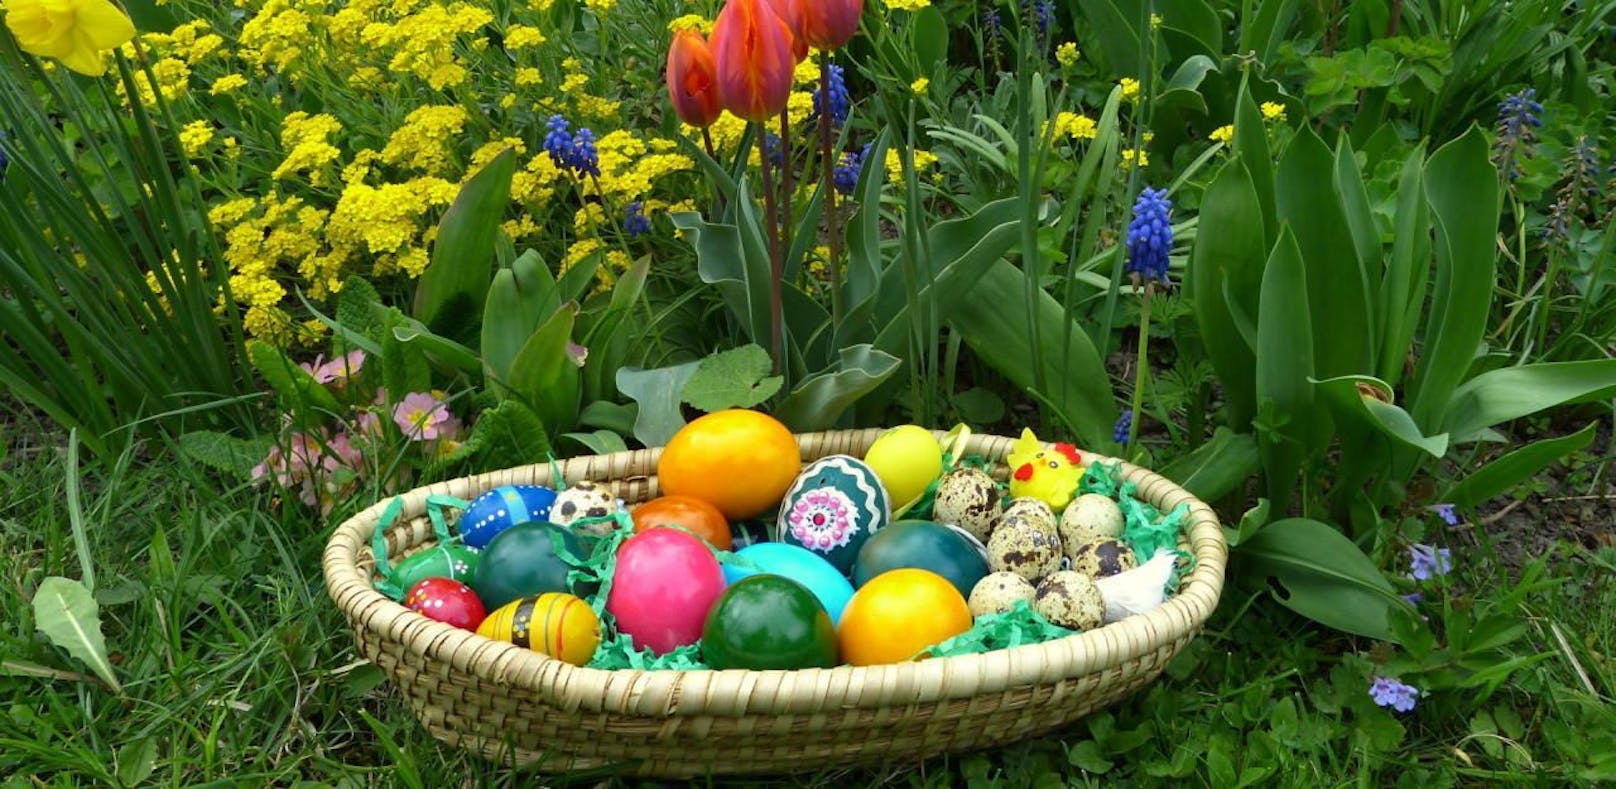 Das Osternesterl ist gemacht 
passt gut zu Gartens bunter Pracht
und schöne Feiertage winken 
mit Schokohasen, Eiern, Schinken.